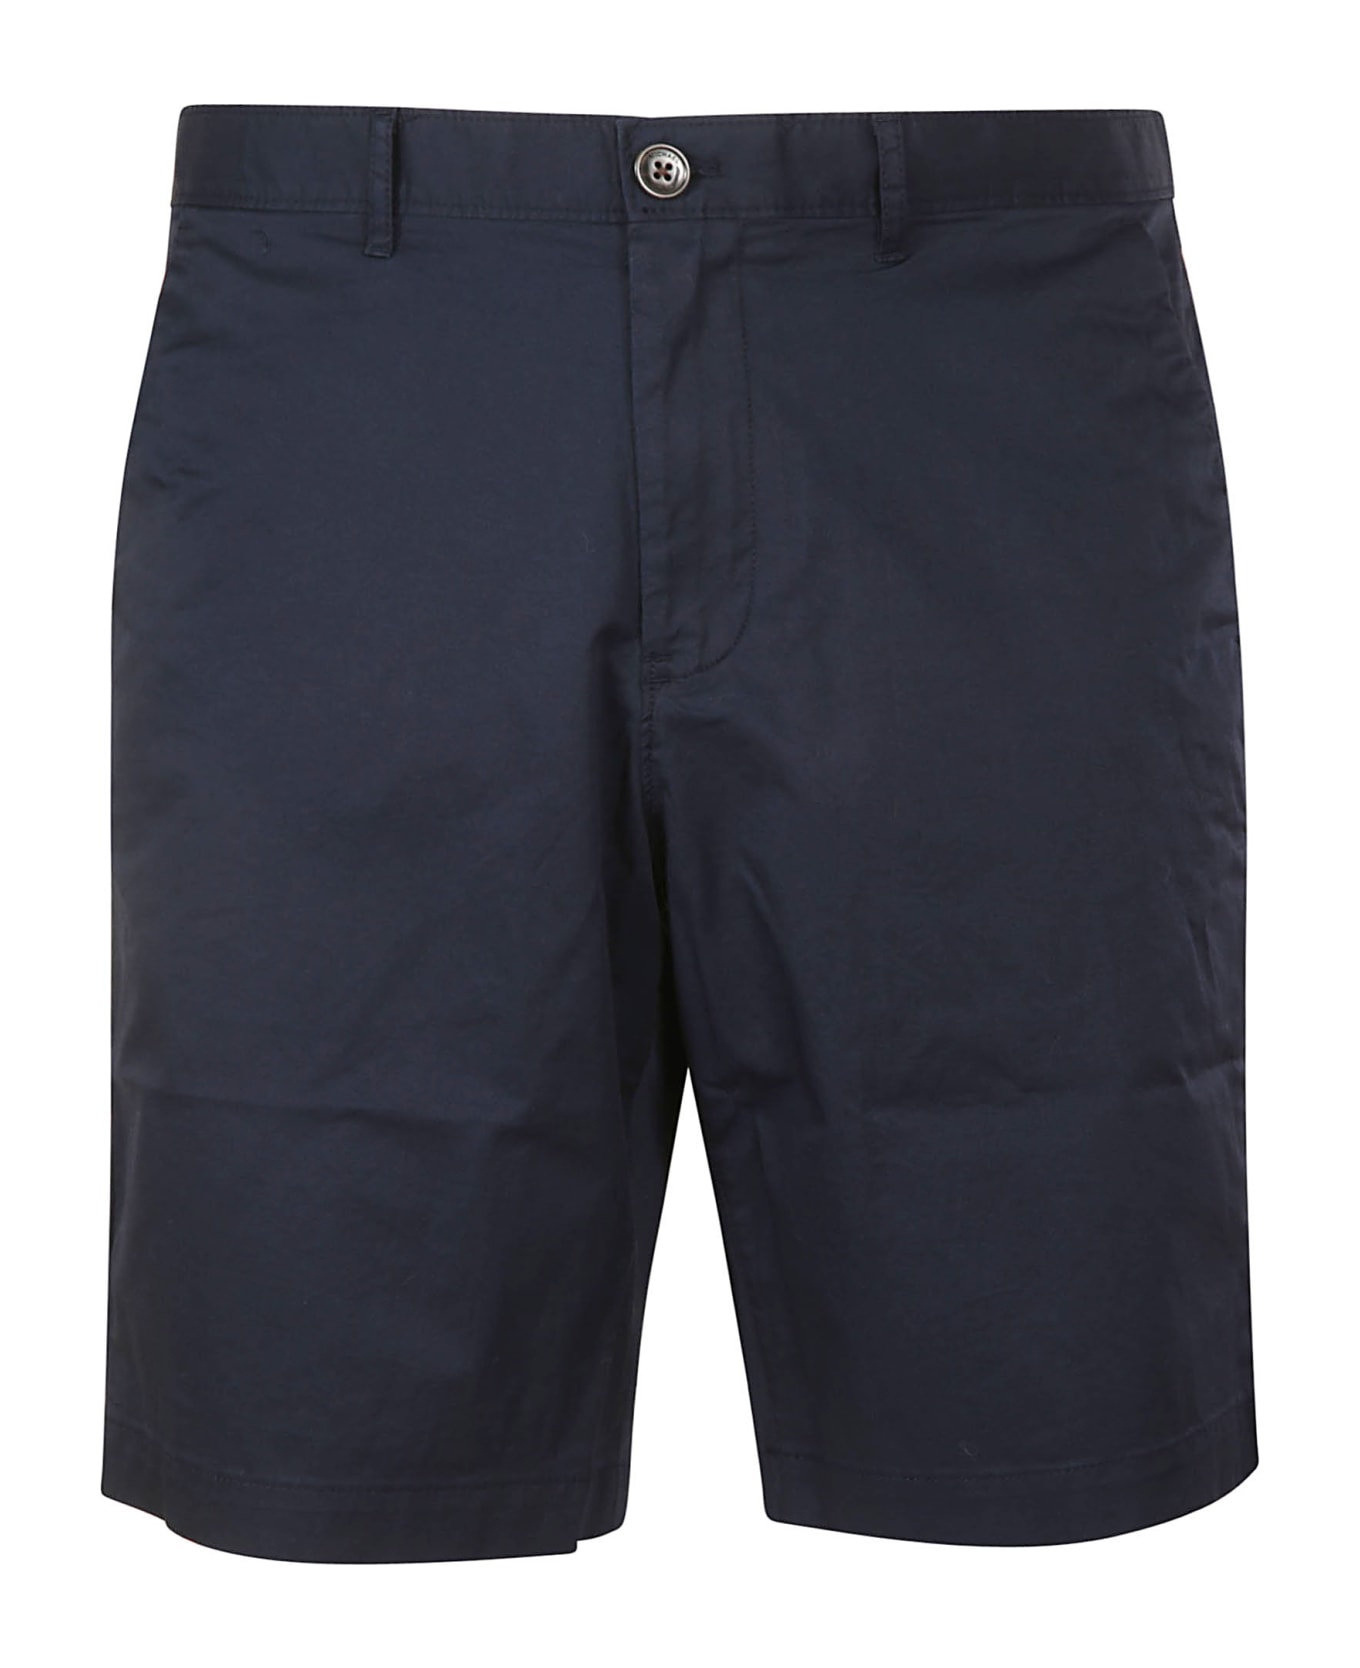 Michael Kors Rear Patched Plain Shorts - Blue